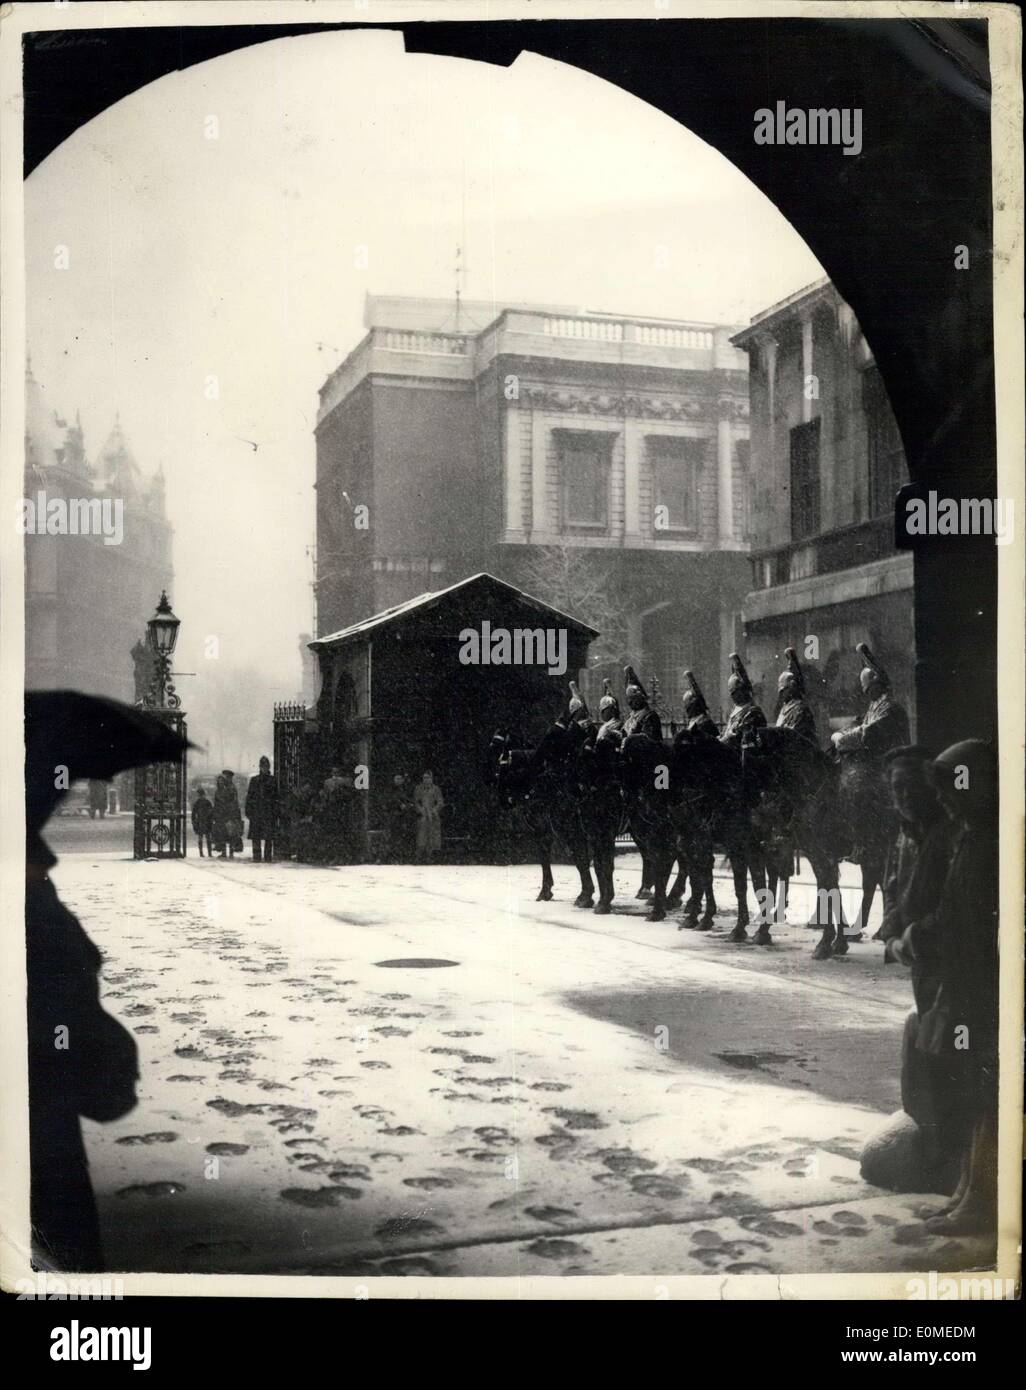 4. Januar 1955 - 01.04.55 Londons erste Schnee des Jahres. Changing of the Guard auf der Horse Guards Parade. Keystone-Bild zeigt: Szene, während die Veränderung der Wachablösung im Schnee auf der Horse Guards Parade in diesem Monat. Stockfoto